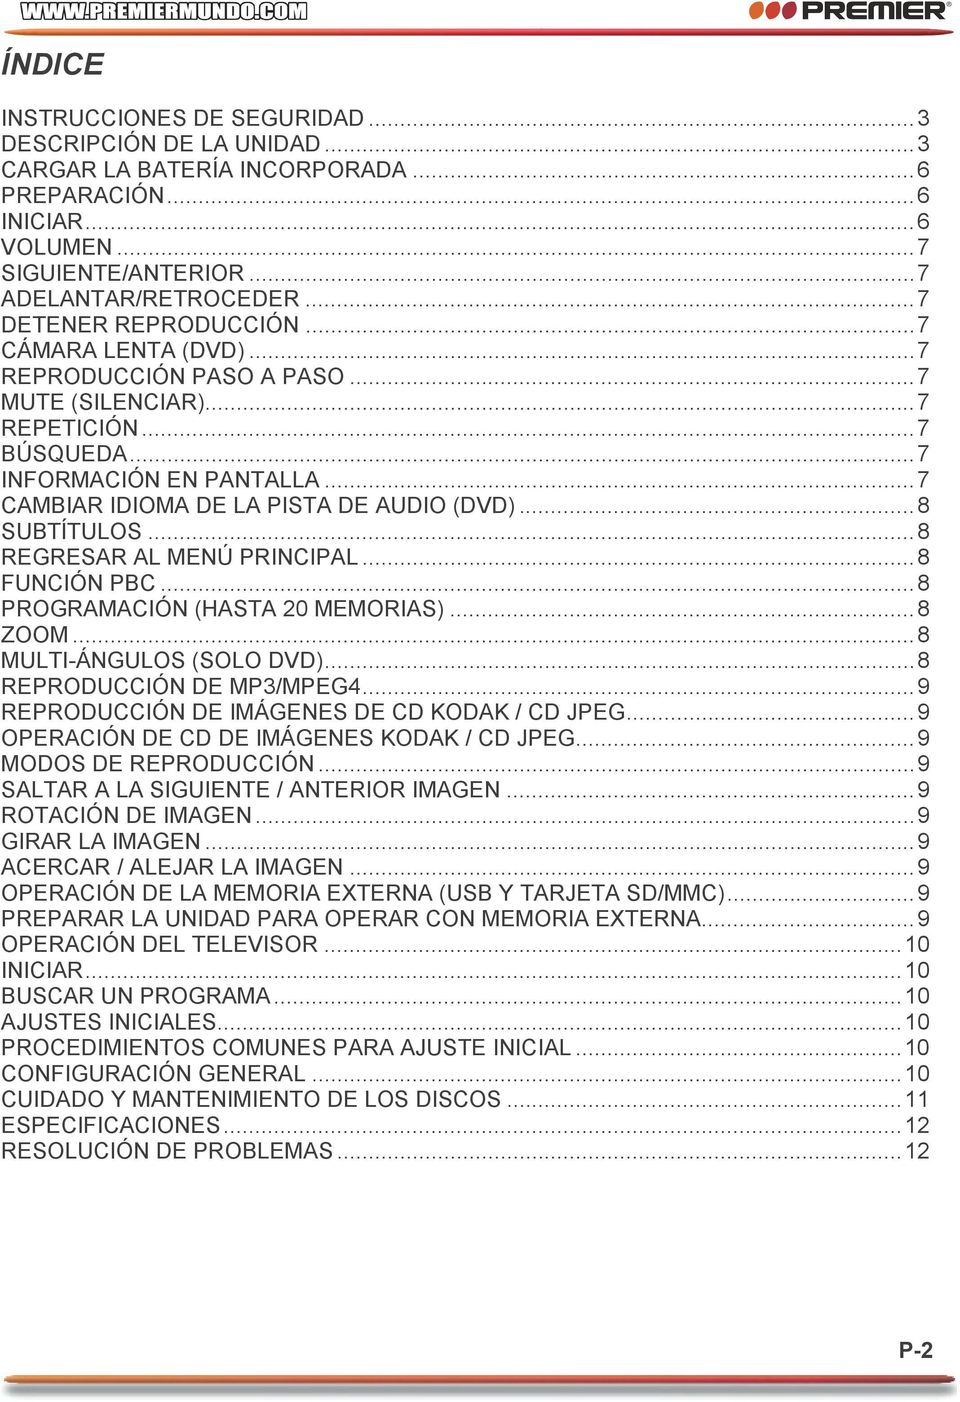 .. 7 CAMBIAR IDIOMA DE LA PISTA DE AUDIO (DVD)... 8 SUBTÍTULOS... 8 REGRESAR AL MENÚ PRINCIPAL... 8 FUNCIÓN PBC... 8 PROGRAMACIÓN (HASTA 20 MEMORIAS)... 8 ZOOM... 8 MULTI-ÁNGULOS (SOLO DVD).